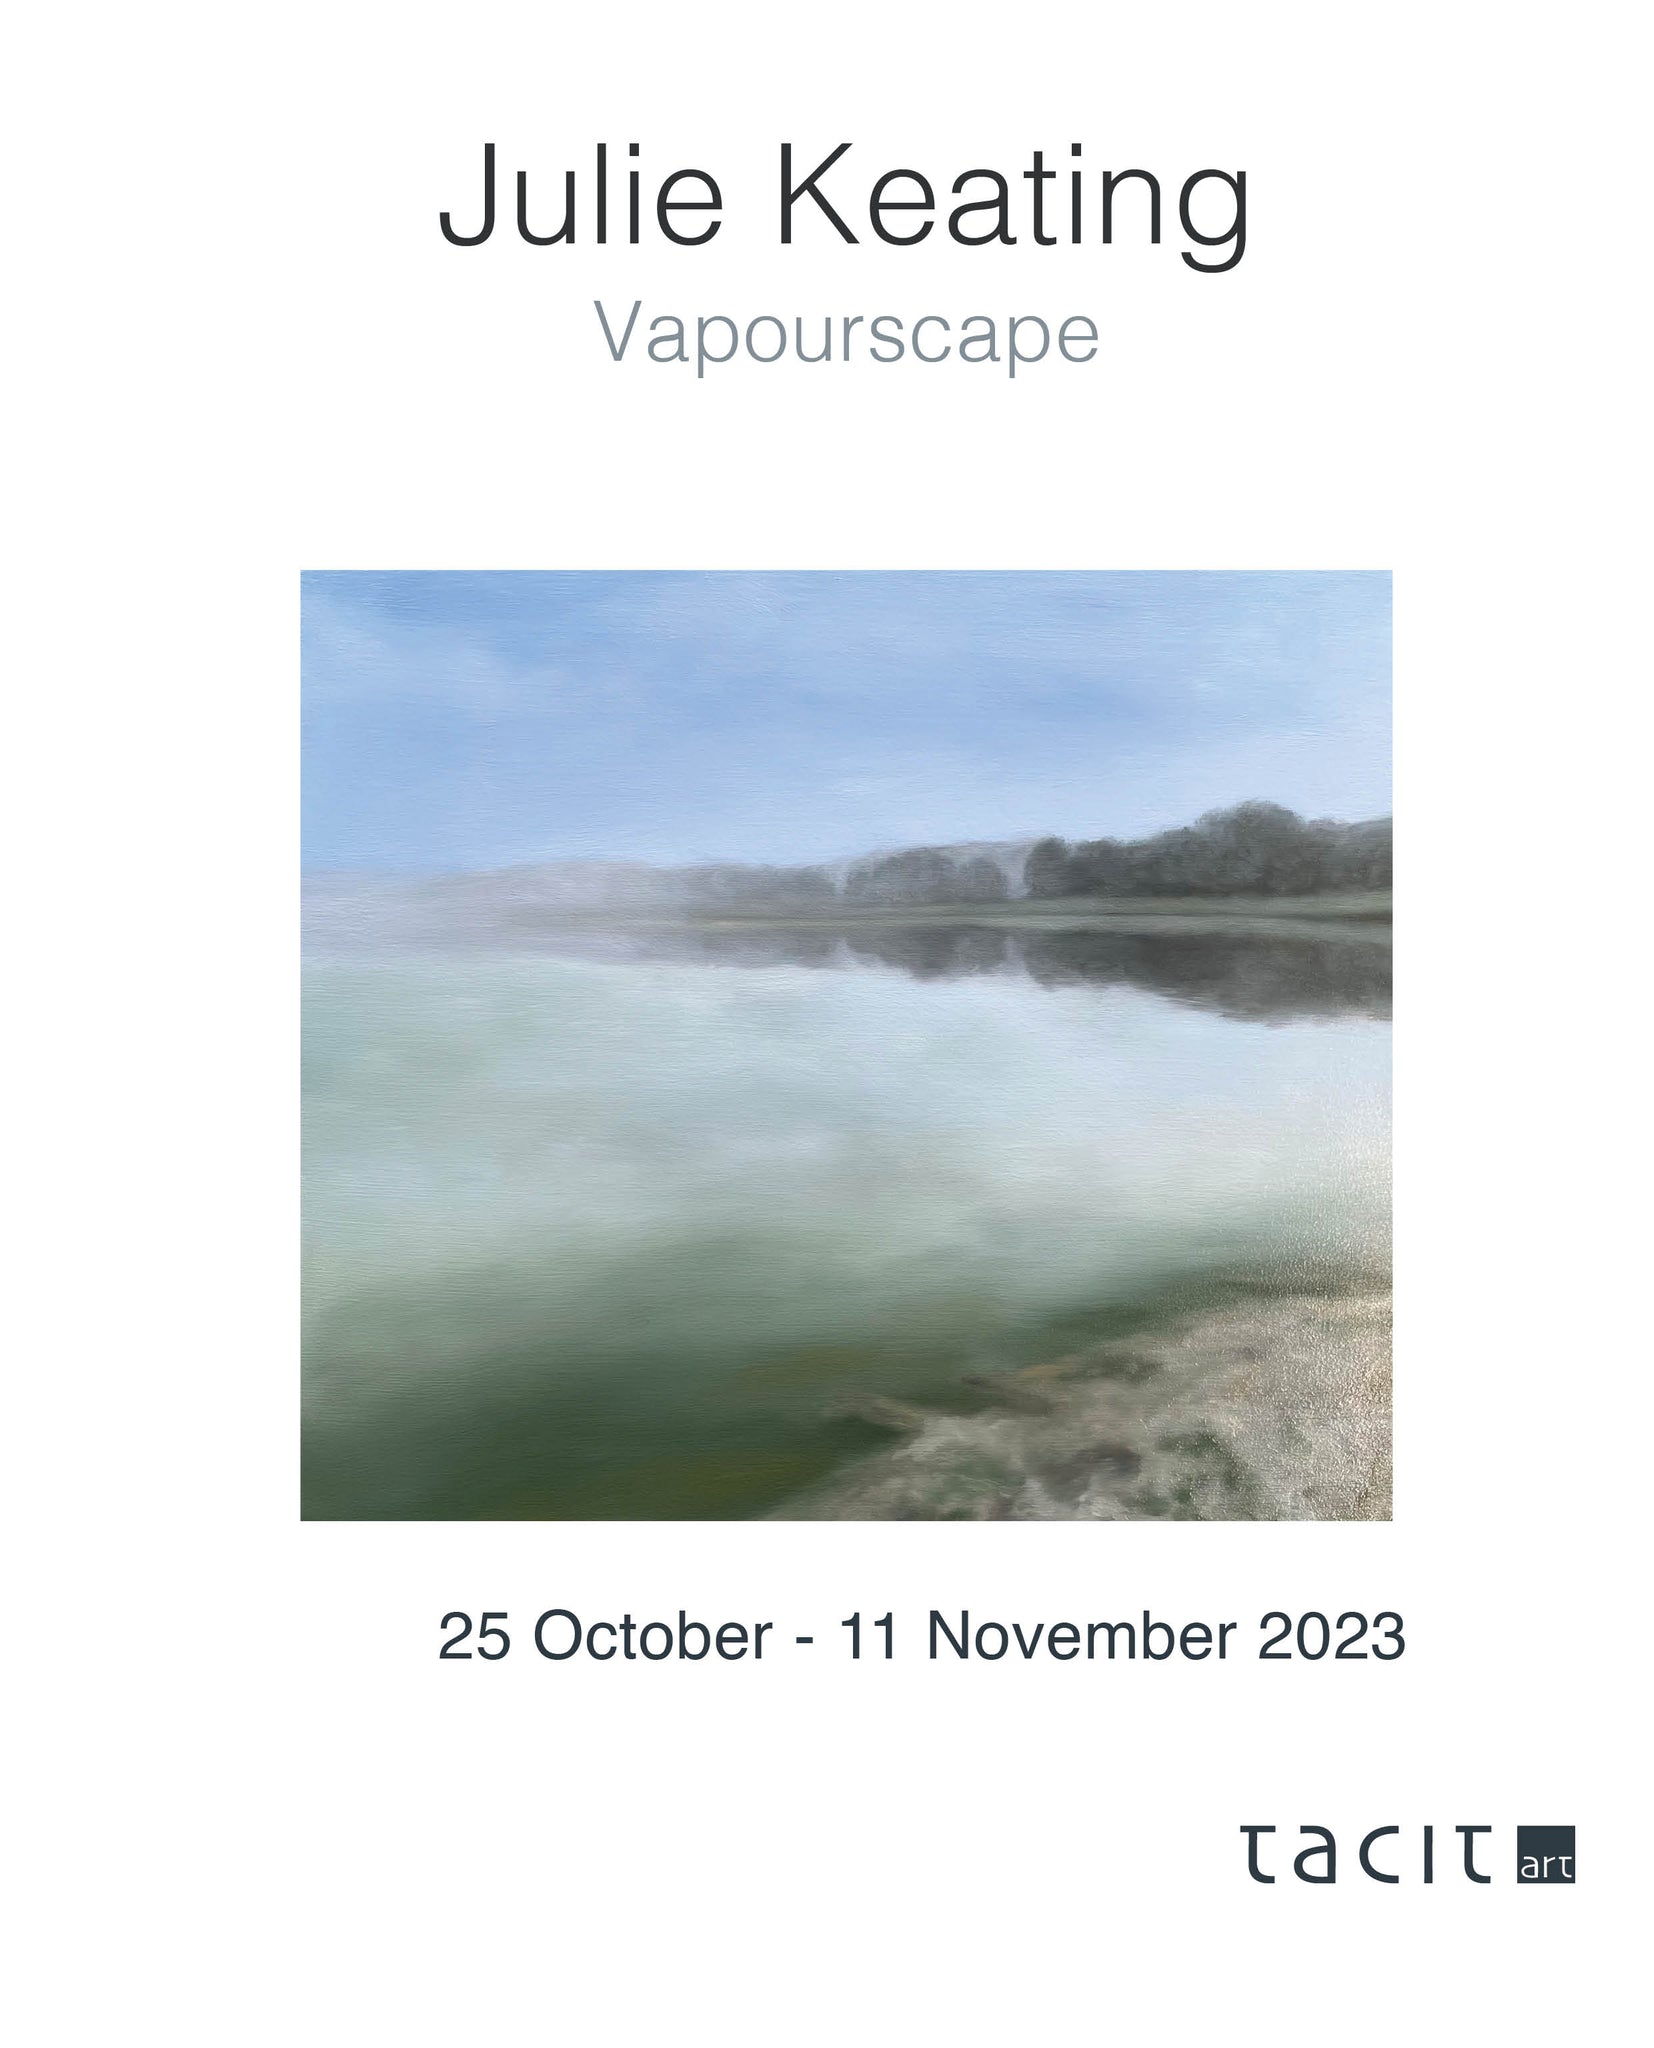 Julie Keating - Vapourscape (2023) exhibition catalogue